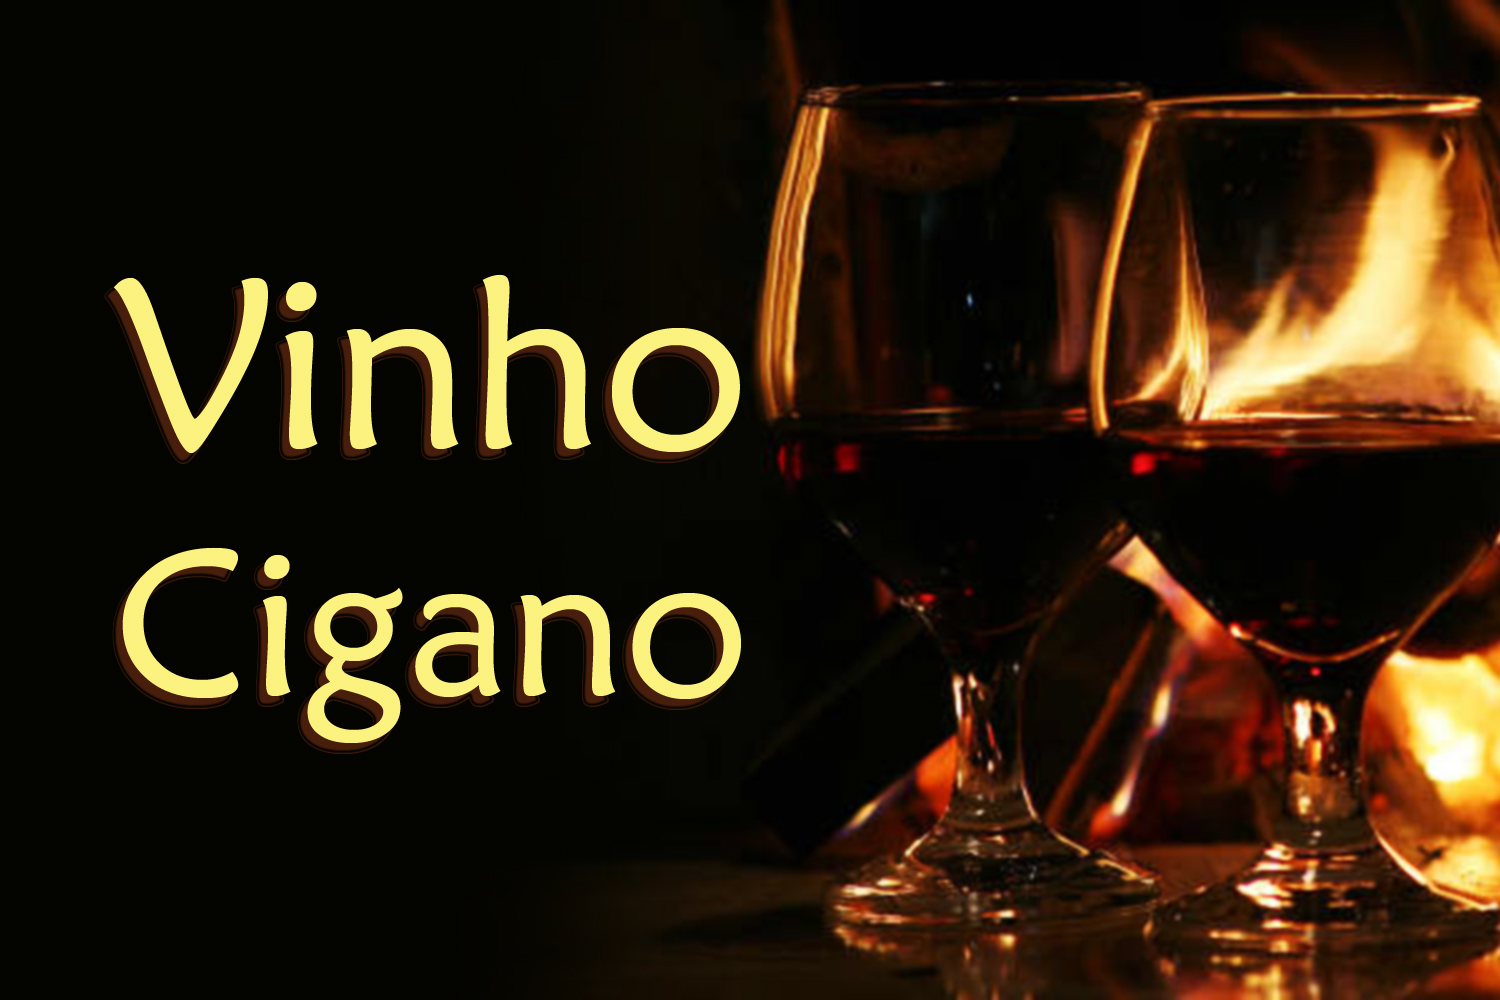 Vinho Cigano